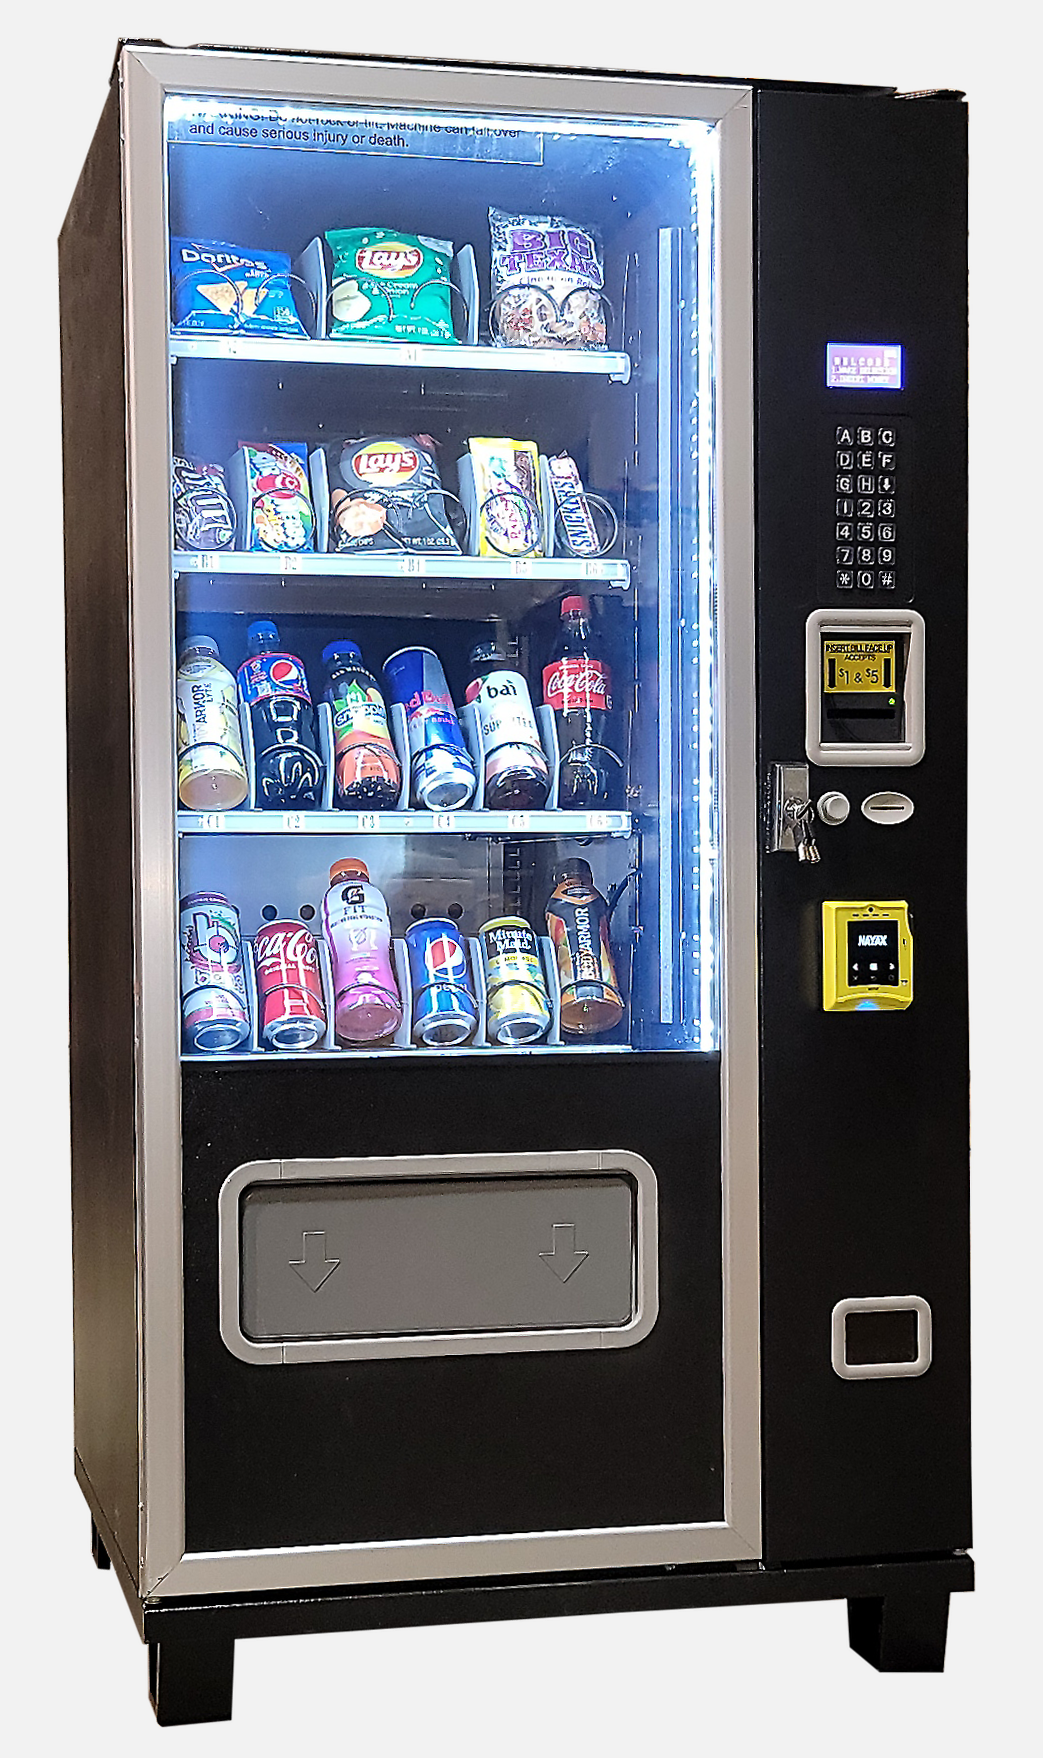 Piranha G424 Combo Vending Machine